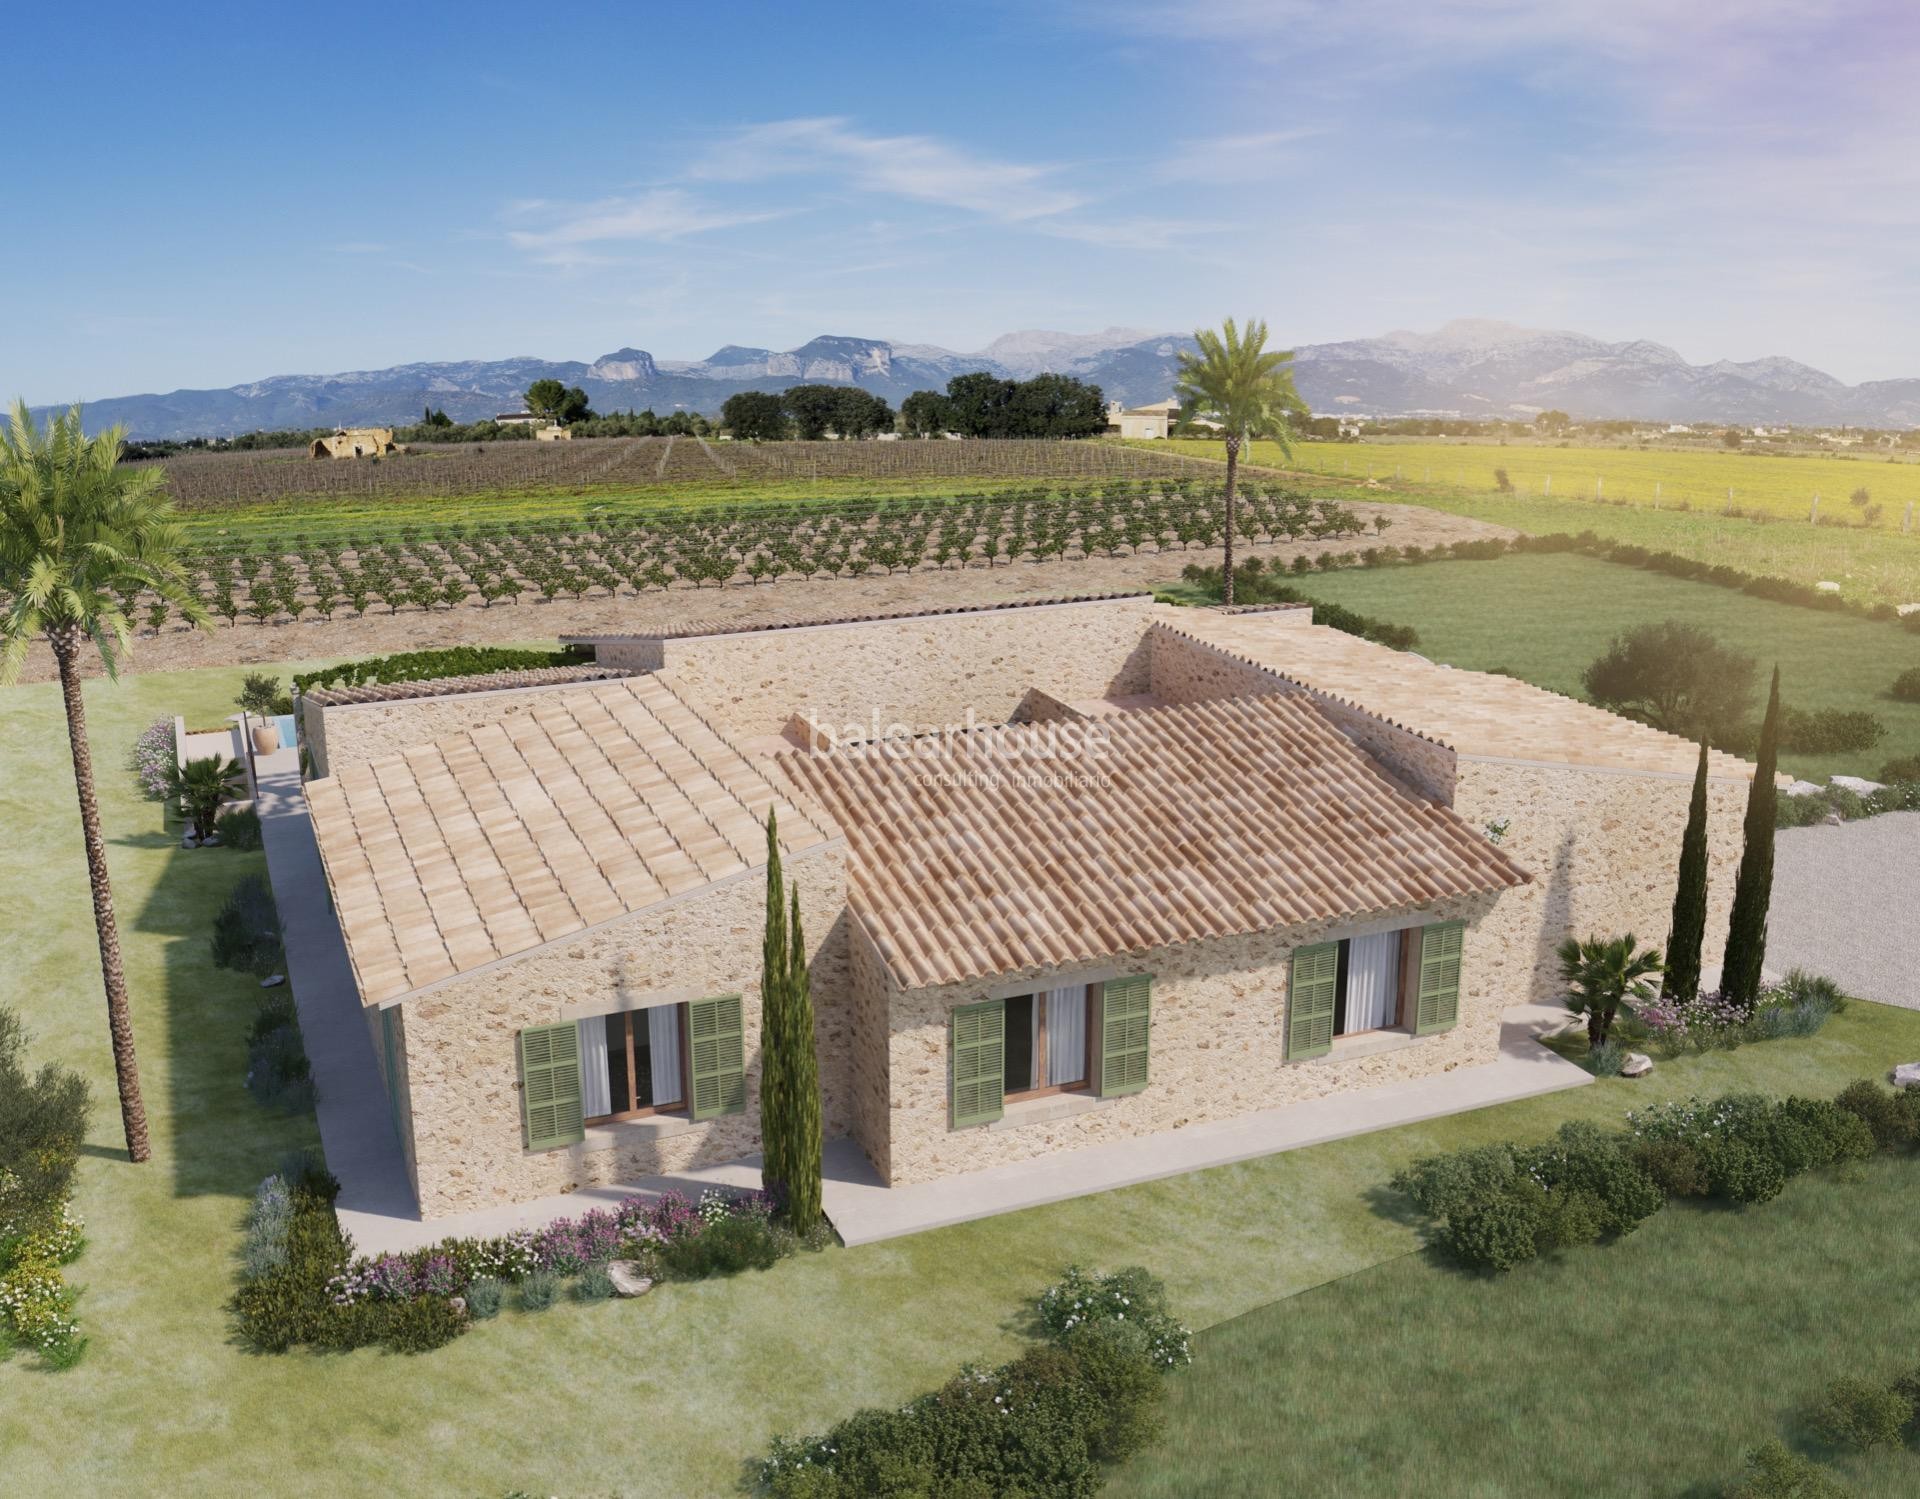 Magnífica finca de obra nueva en un paraíso entre viñedos en el interior de Mallorca